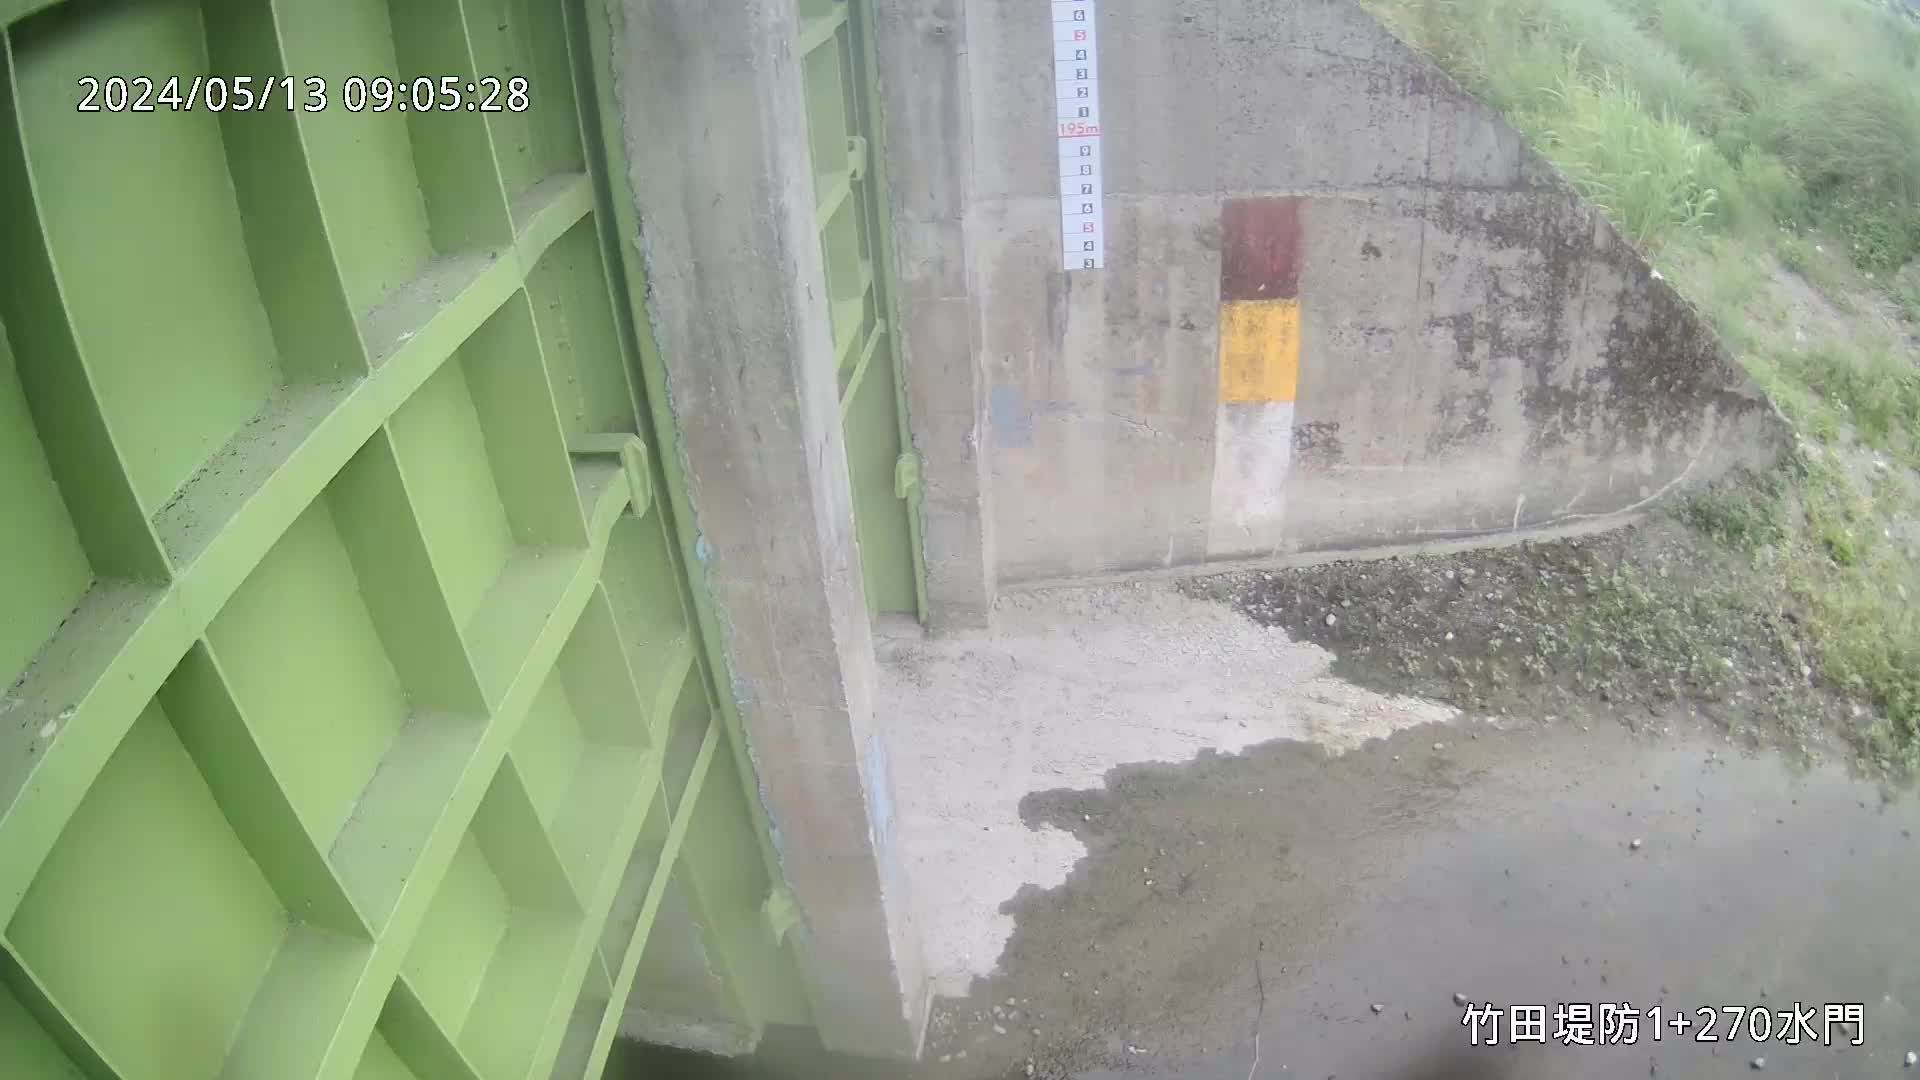 水利署水資源  九河局 竹田堤防1+270水門 槍型攝影機 距離0.8公里 氣溫24.6度